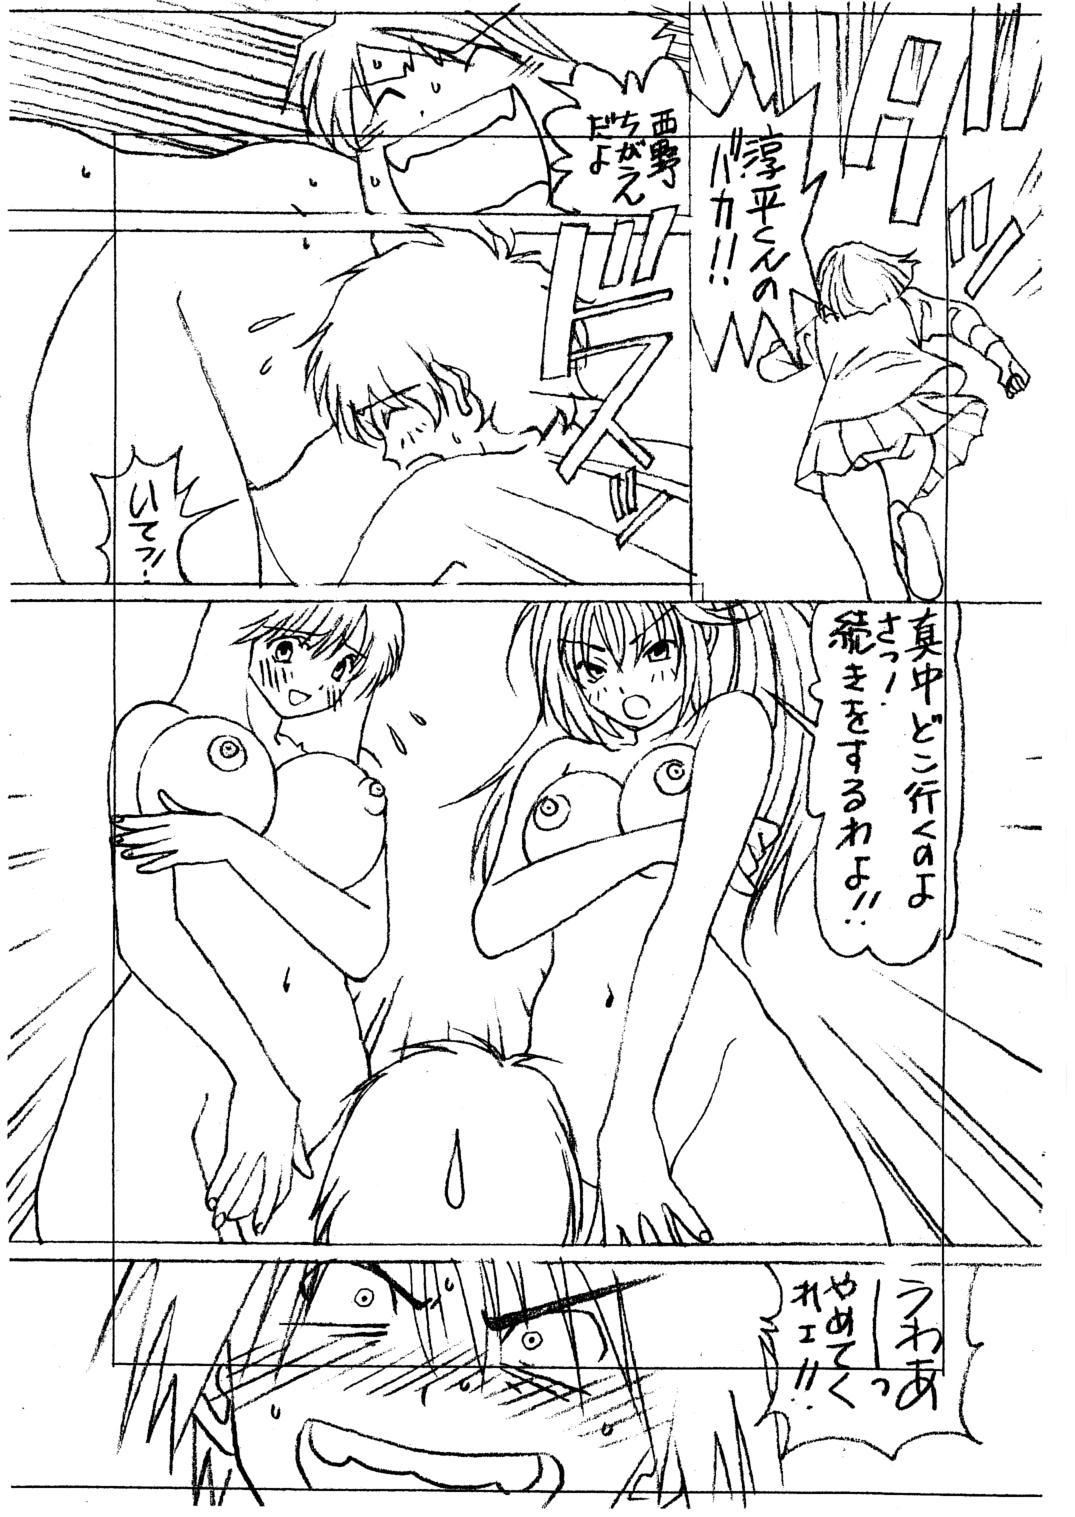 Vergon Ichigo 100% vol. 1.5 - Ichigo 100 Gostosa - Page 8